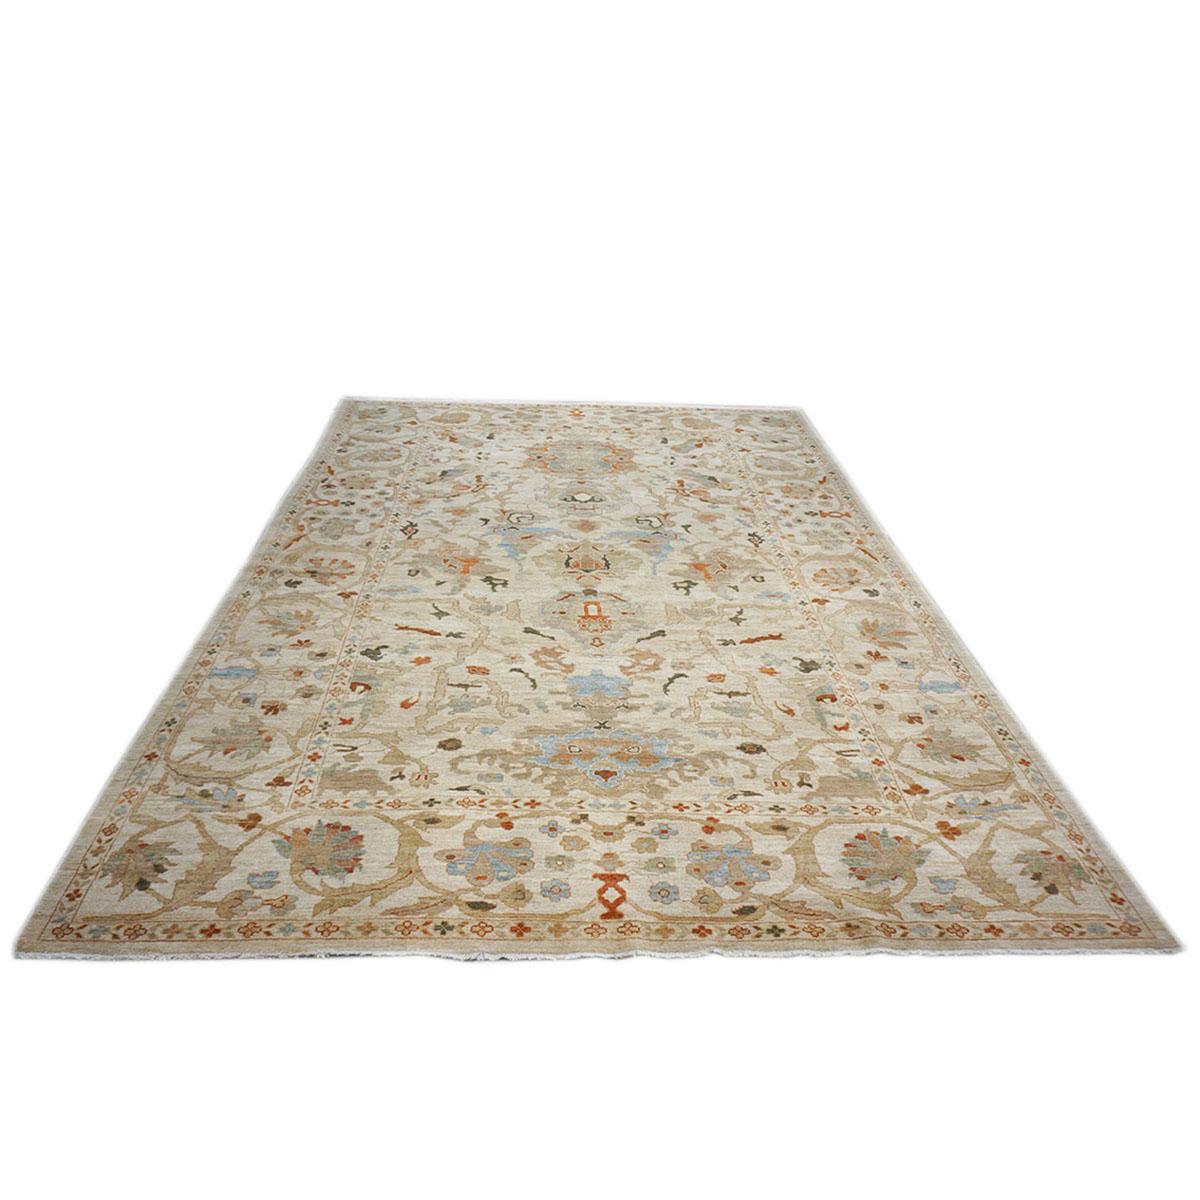 Ashly fine rugs présente une recréation antique d'un tapis persan Sultanabad original de la taille d'une pièce. Faisant partie de notre propre production antérieure, cette reconstitution antique a été pensée et créée en interne et fabriquée à la